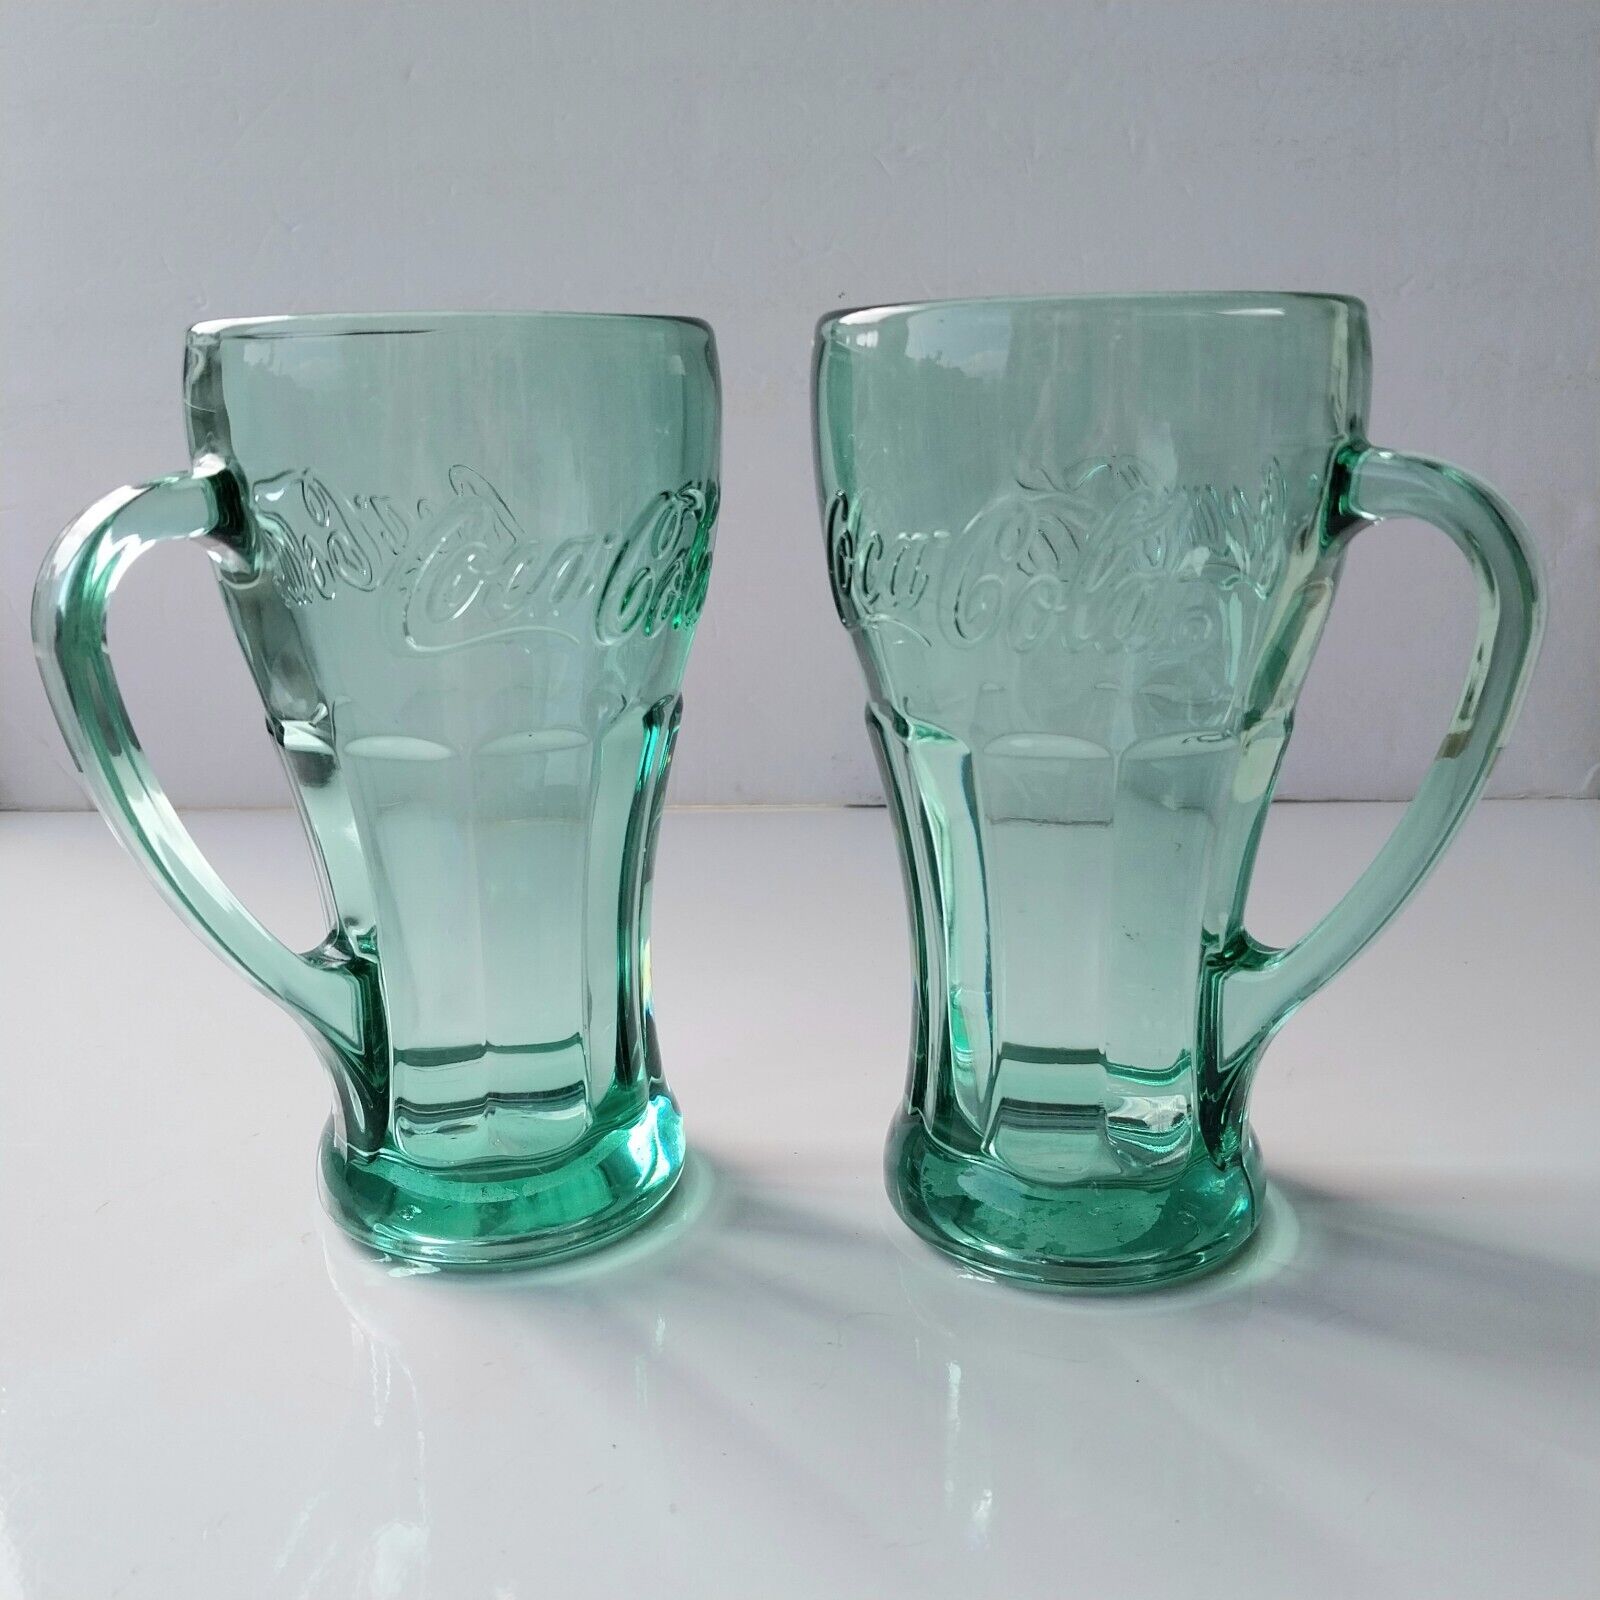 2 NEW Vintage Green Coca Cola Glass Mug w Handle Libbey Glassware NOS